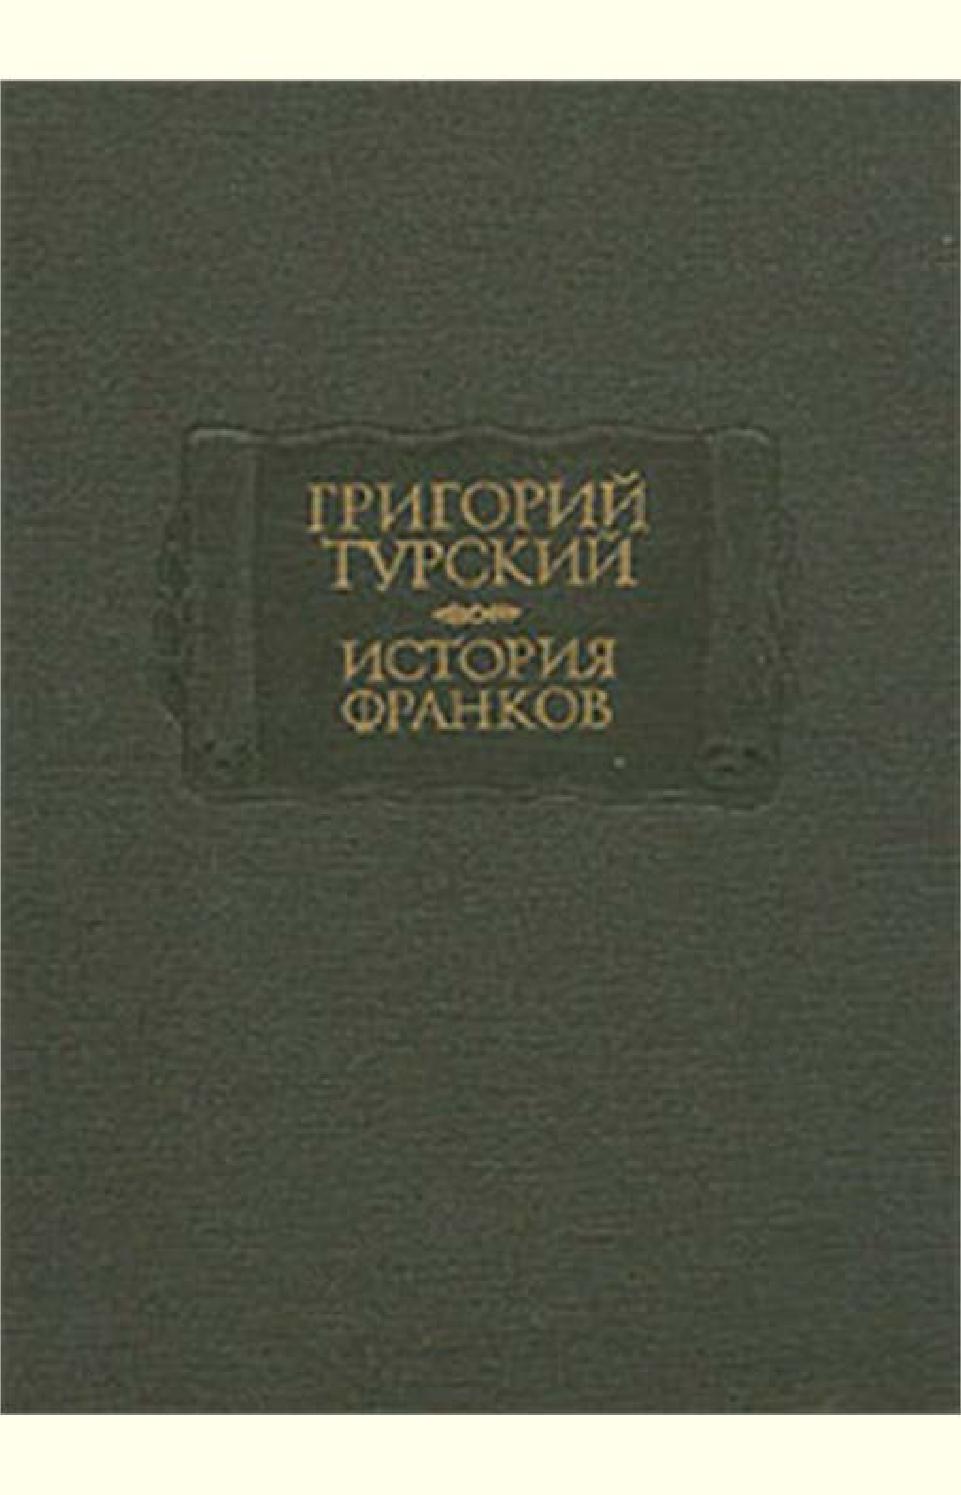 История Франков. Книги 11-12, Григорий Турский